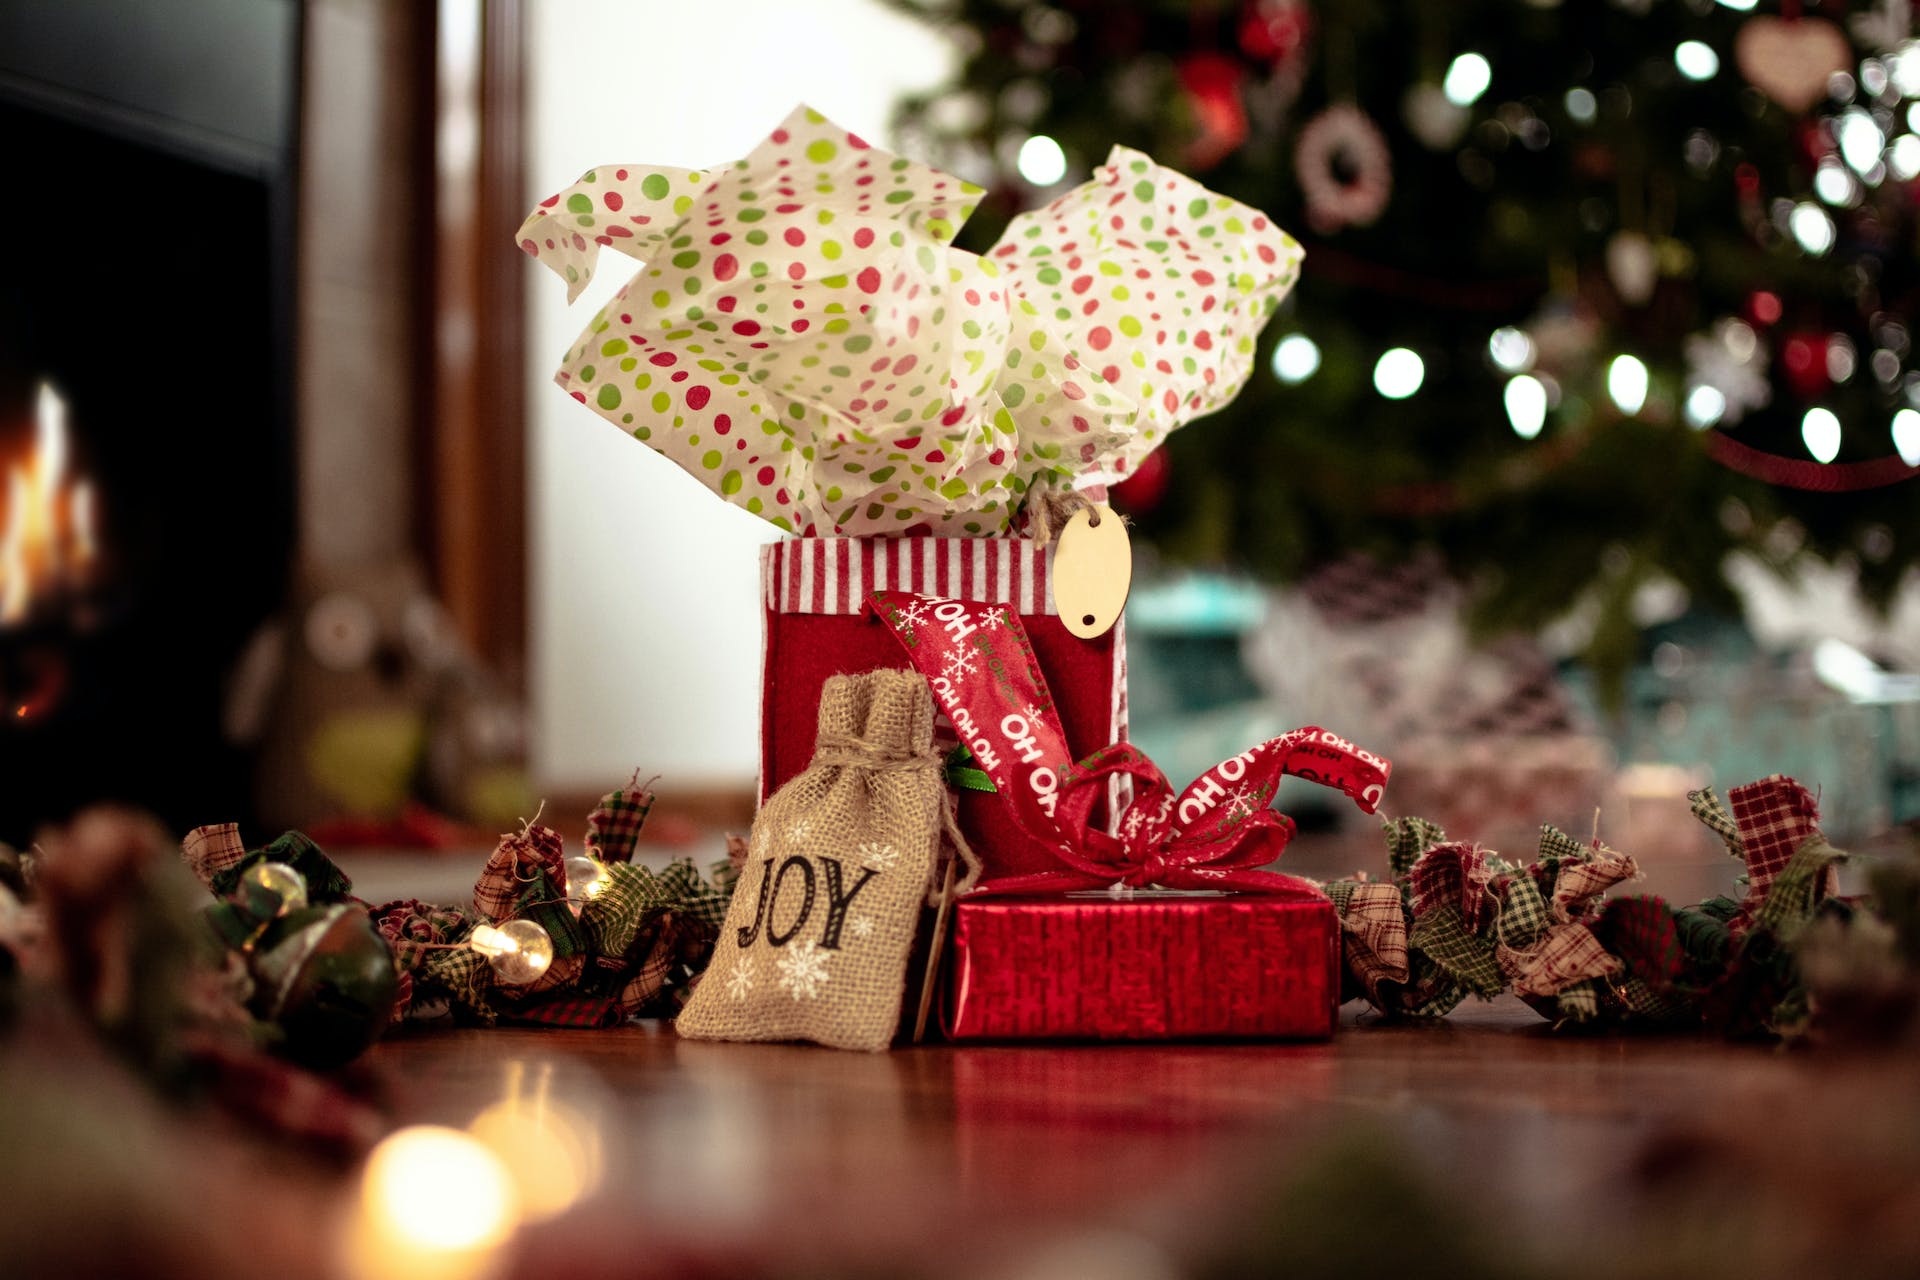 Des cadeaux de Noël empilés les uns sur les autres | Source : Pexels